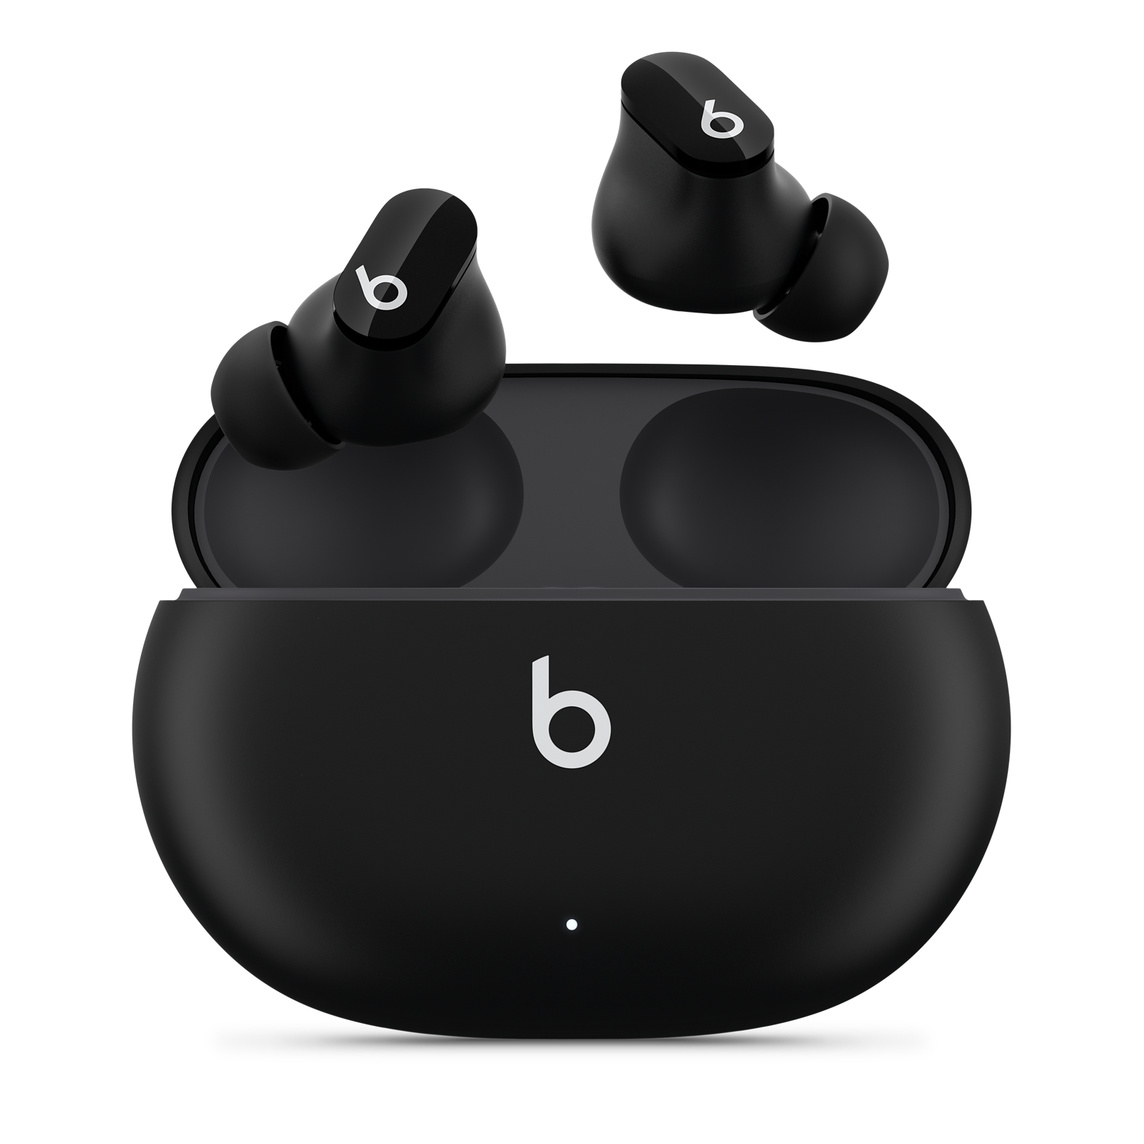 Écouteurs Beats Studio Buds totalement sans fil avec réduction du bruit, en coloris Noir avec le logo Beats, présentés au-dessus du boîtier de charge pratique.